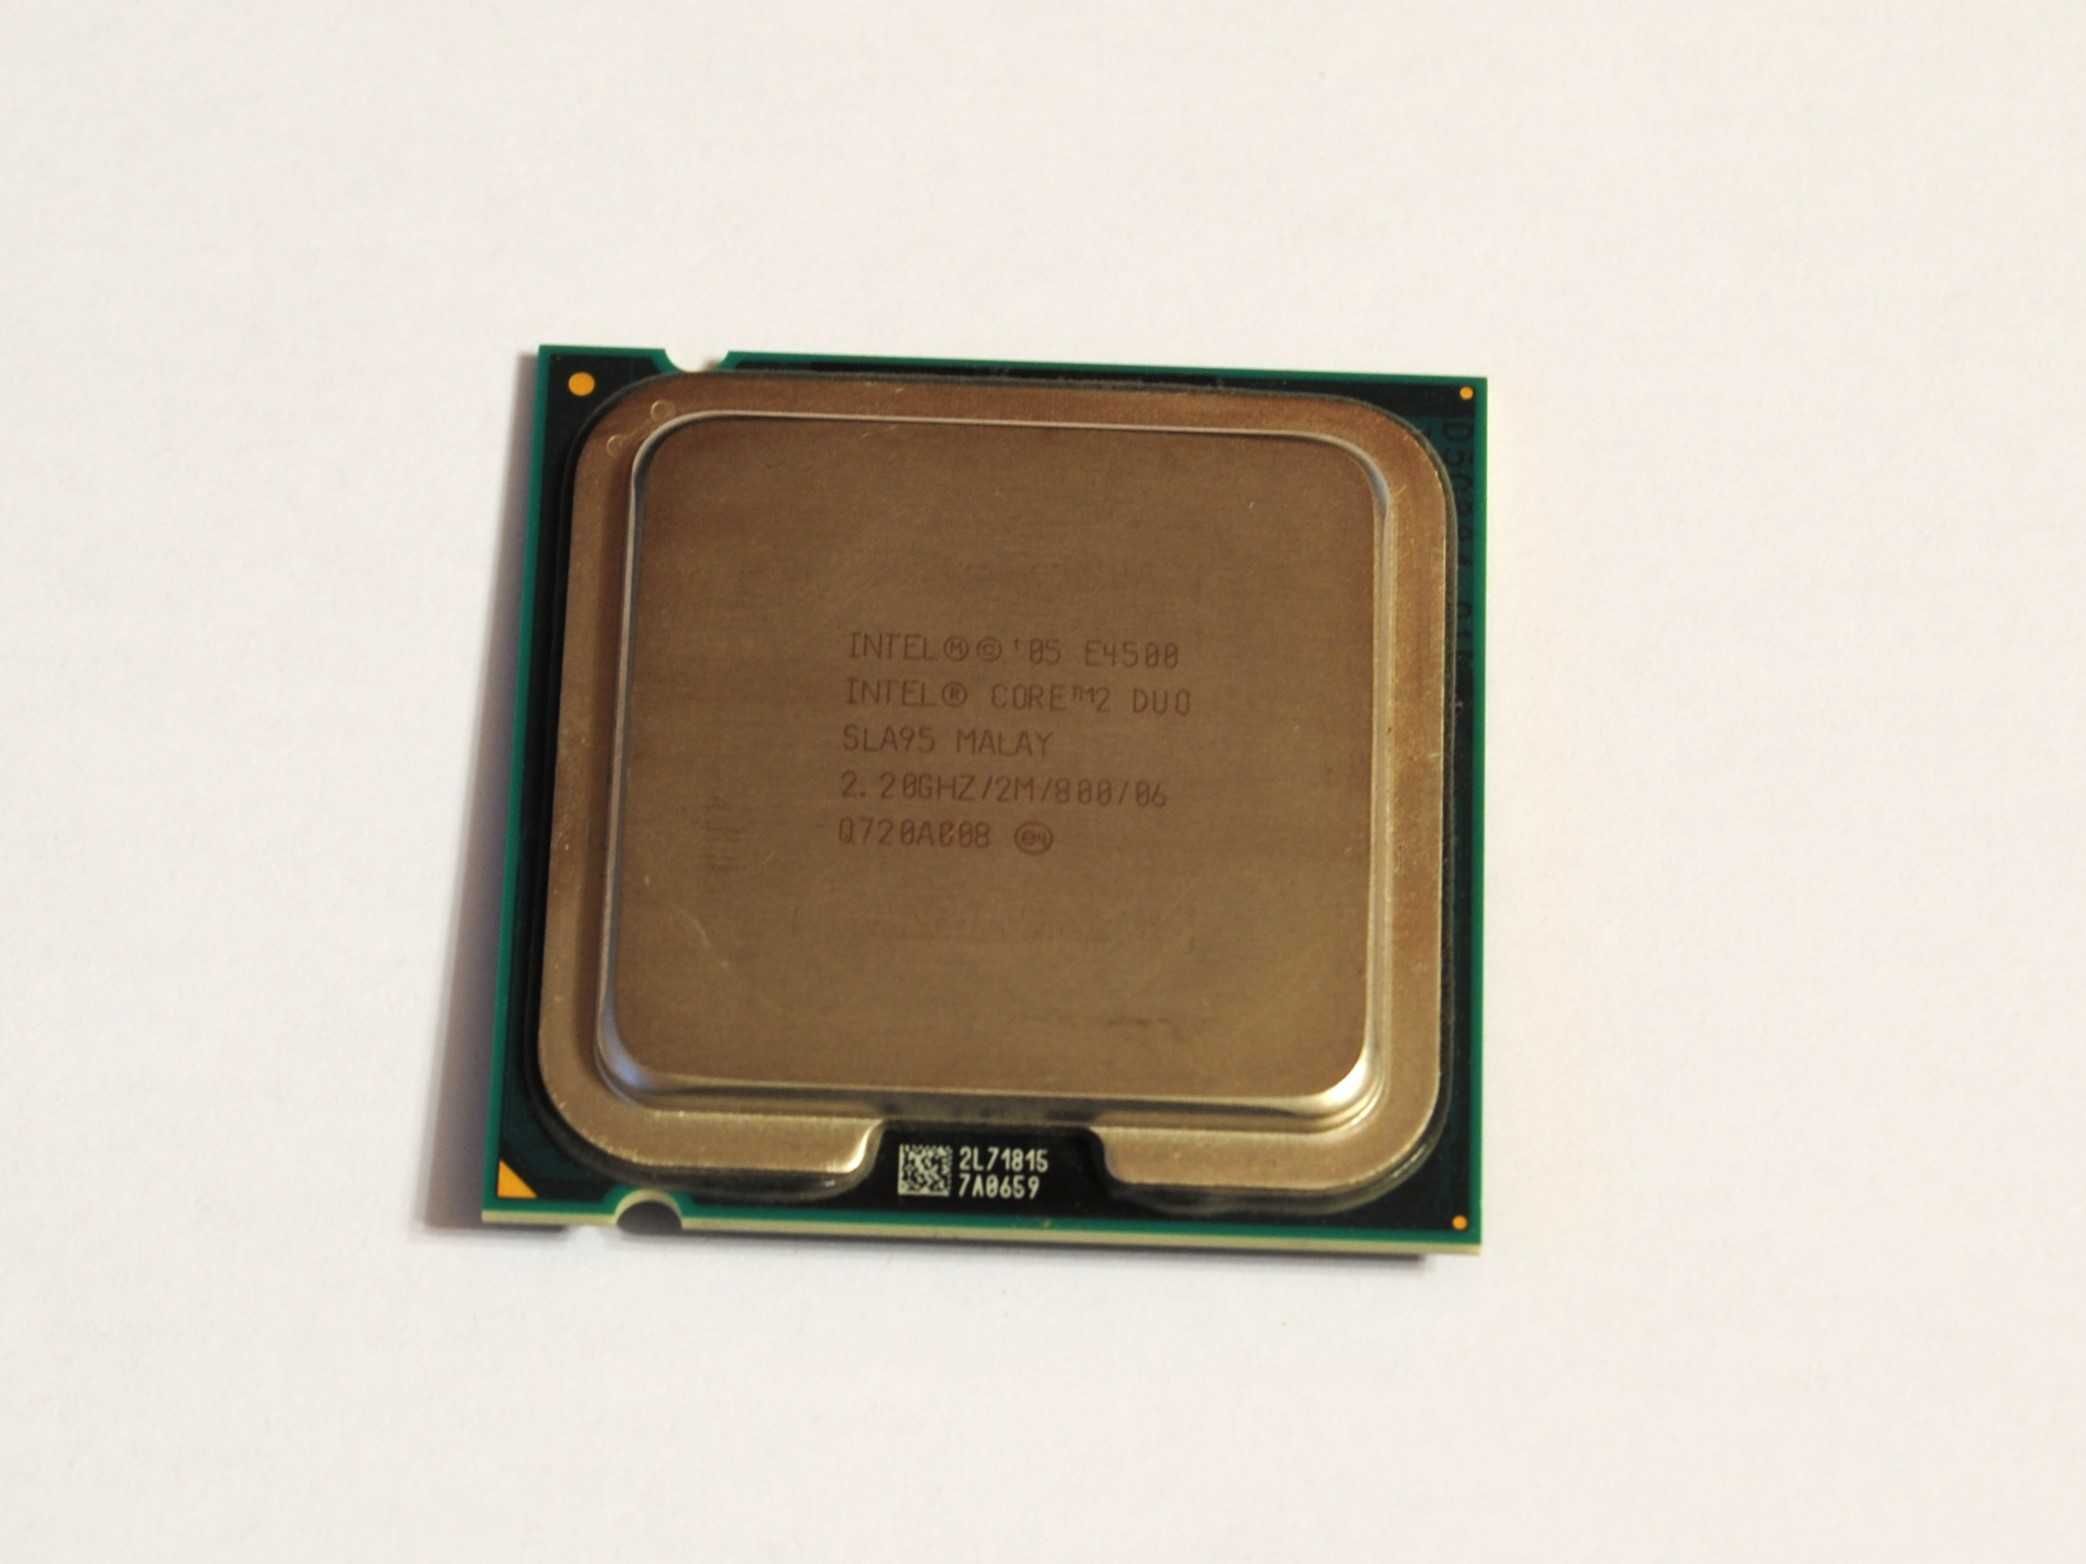 Procesor Intel Core2 Duo E4500 2.2GHz LGA775